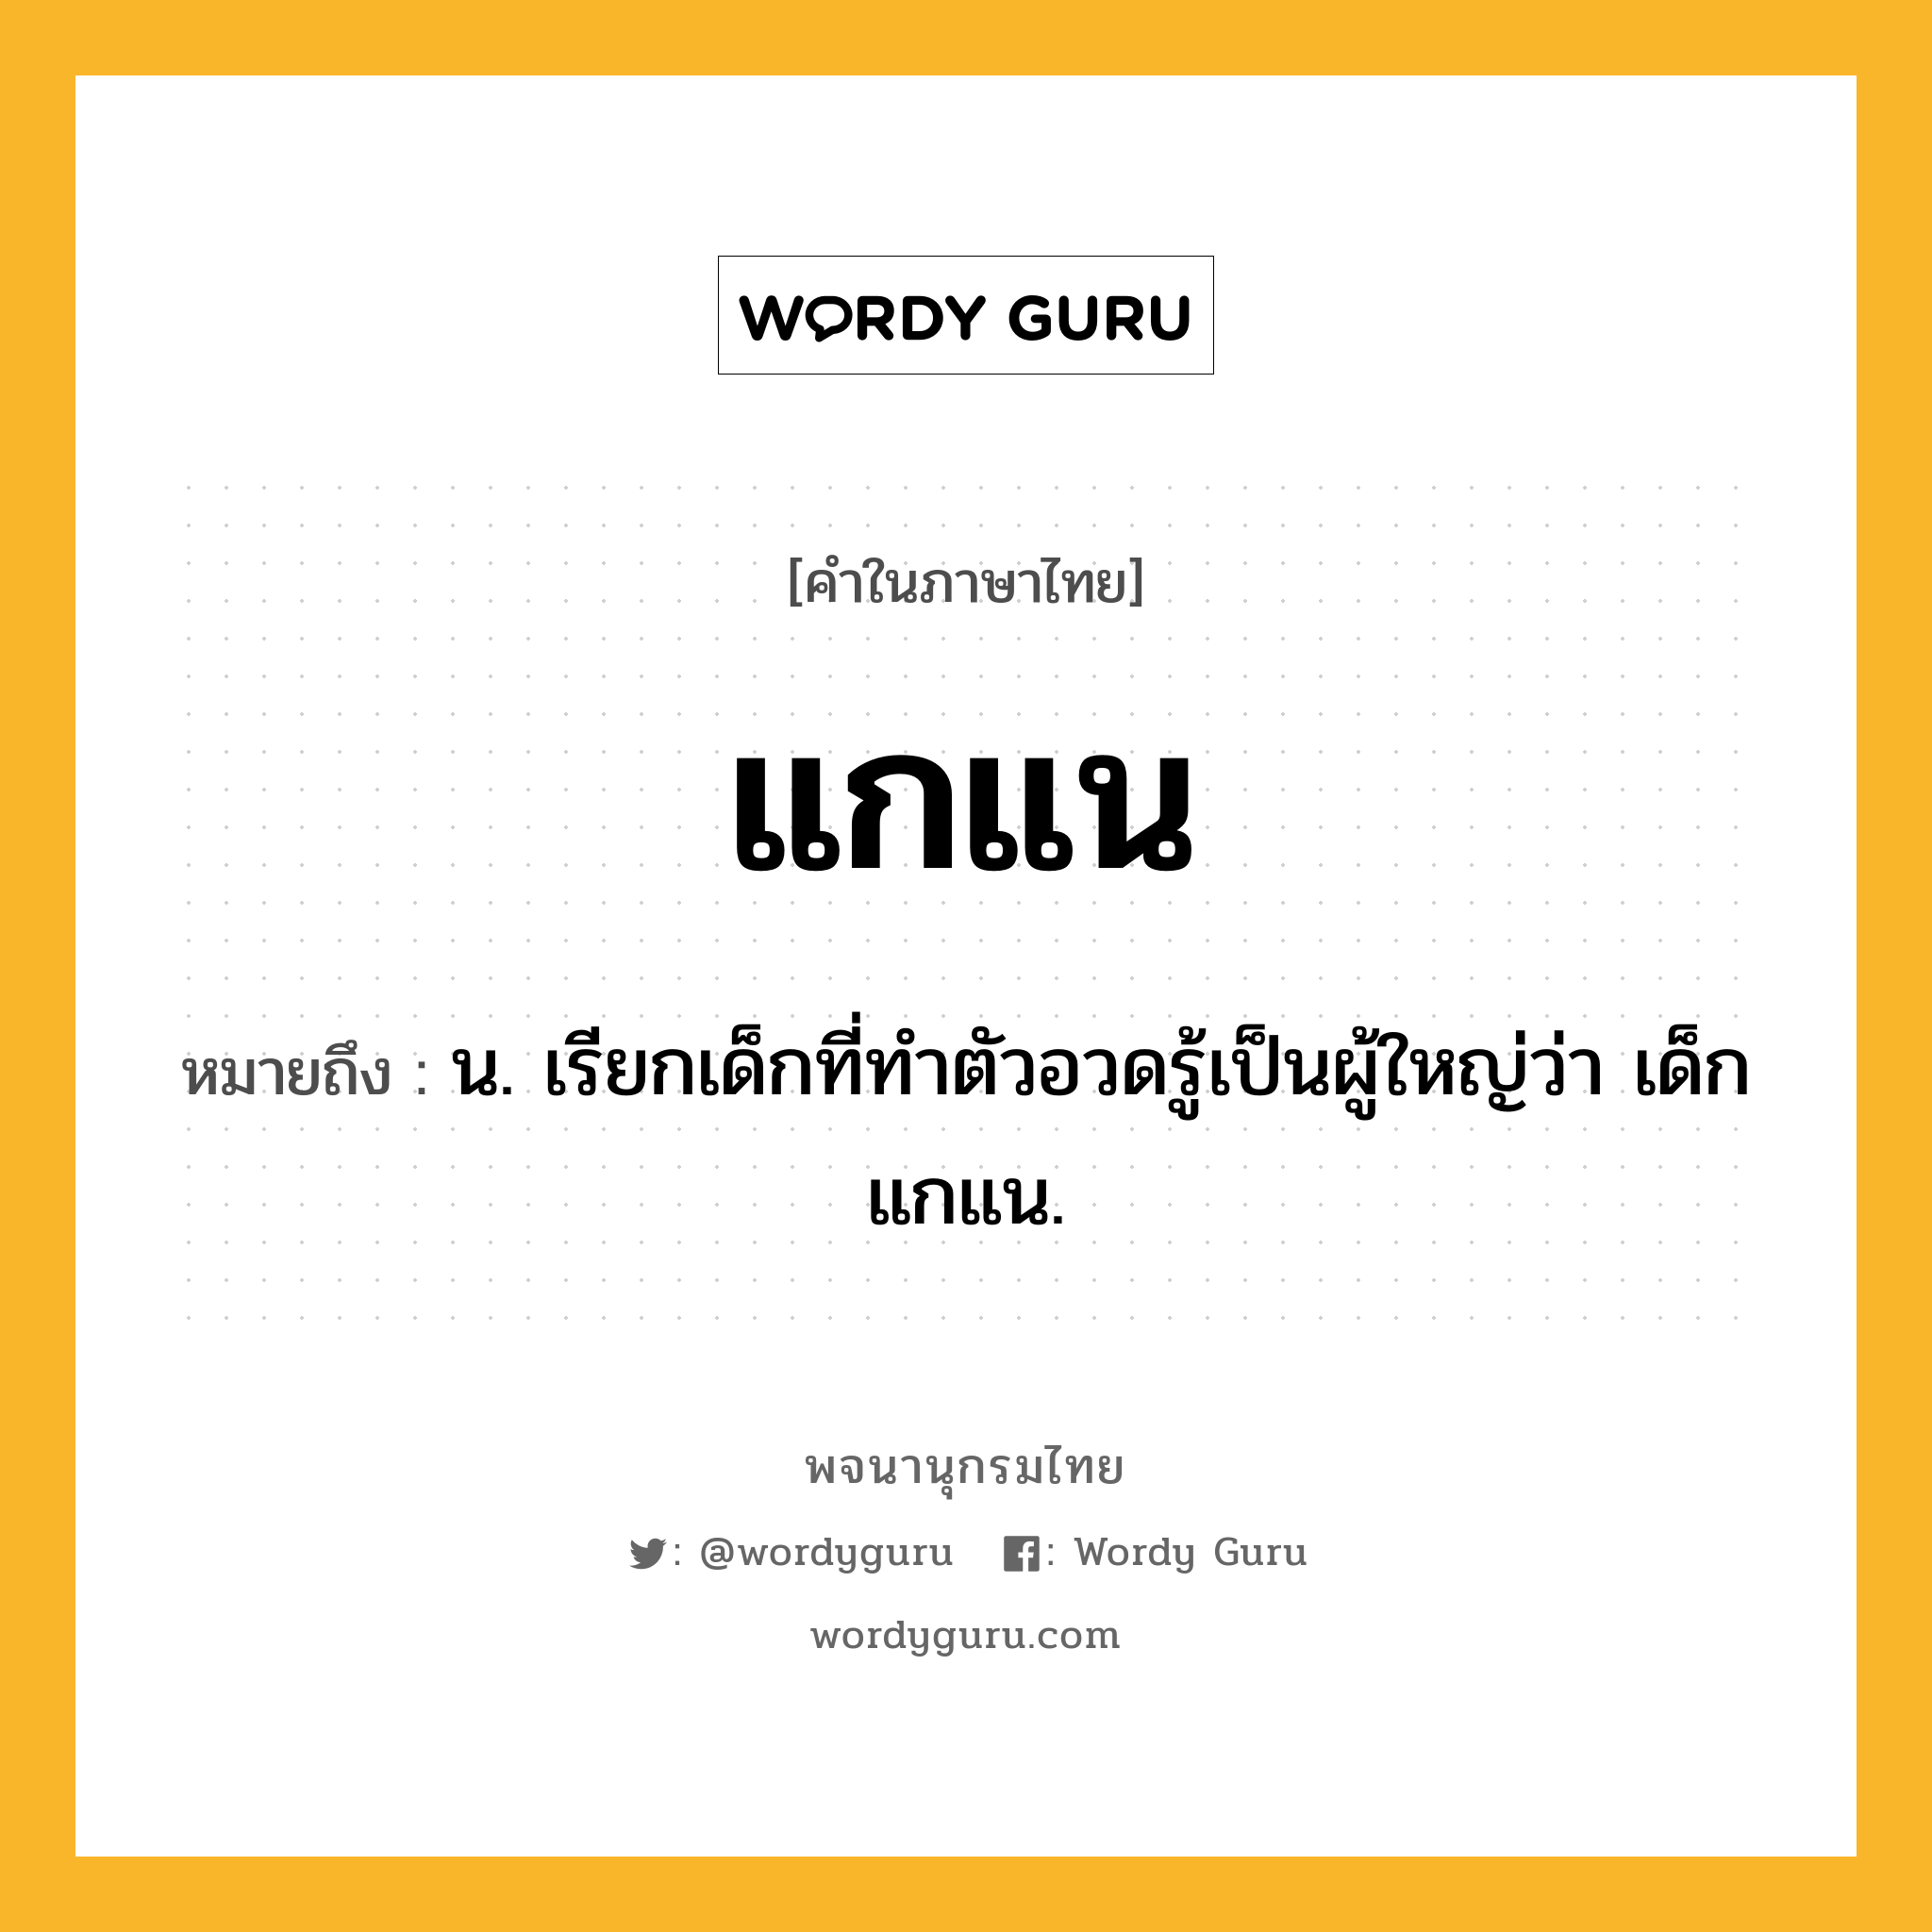 แกแน ความหมาย หมายถึงอะไร?, คำในภาษาไทย แกแน หมายถึง น. เรียกเด็กที่ทําตัวอวดรู้เป็นผู้ใหญ่ว่า เด็กแกแน.